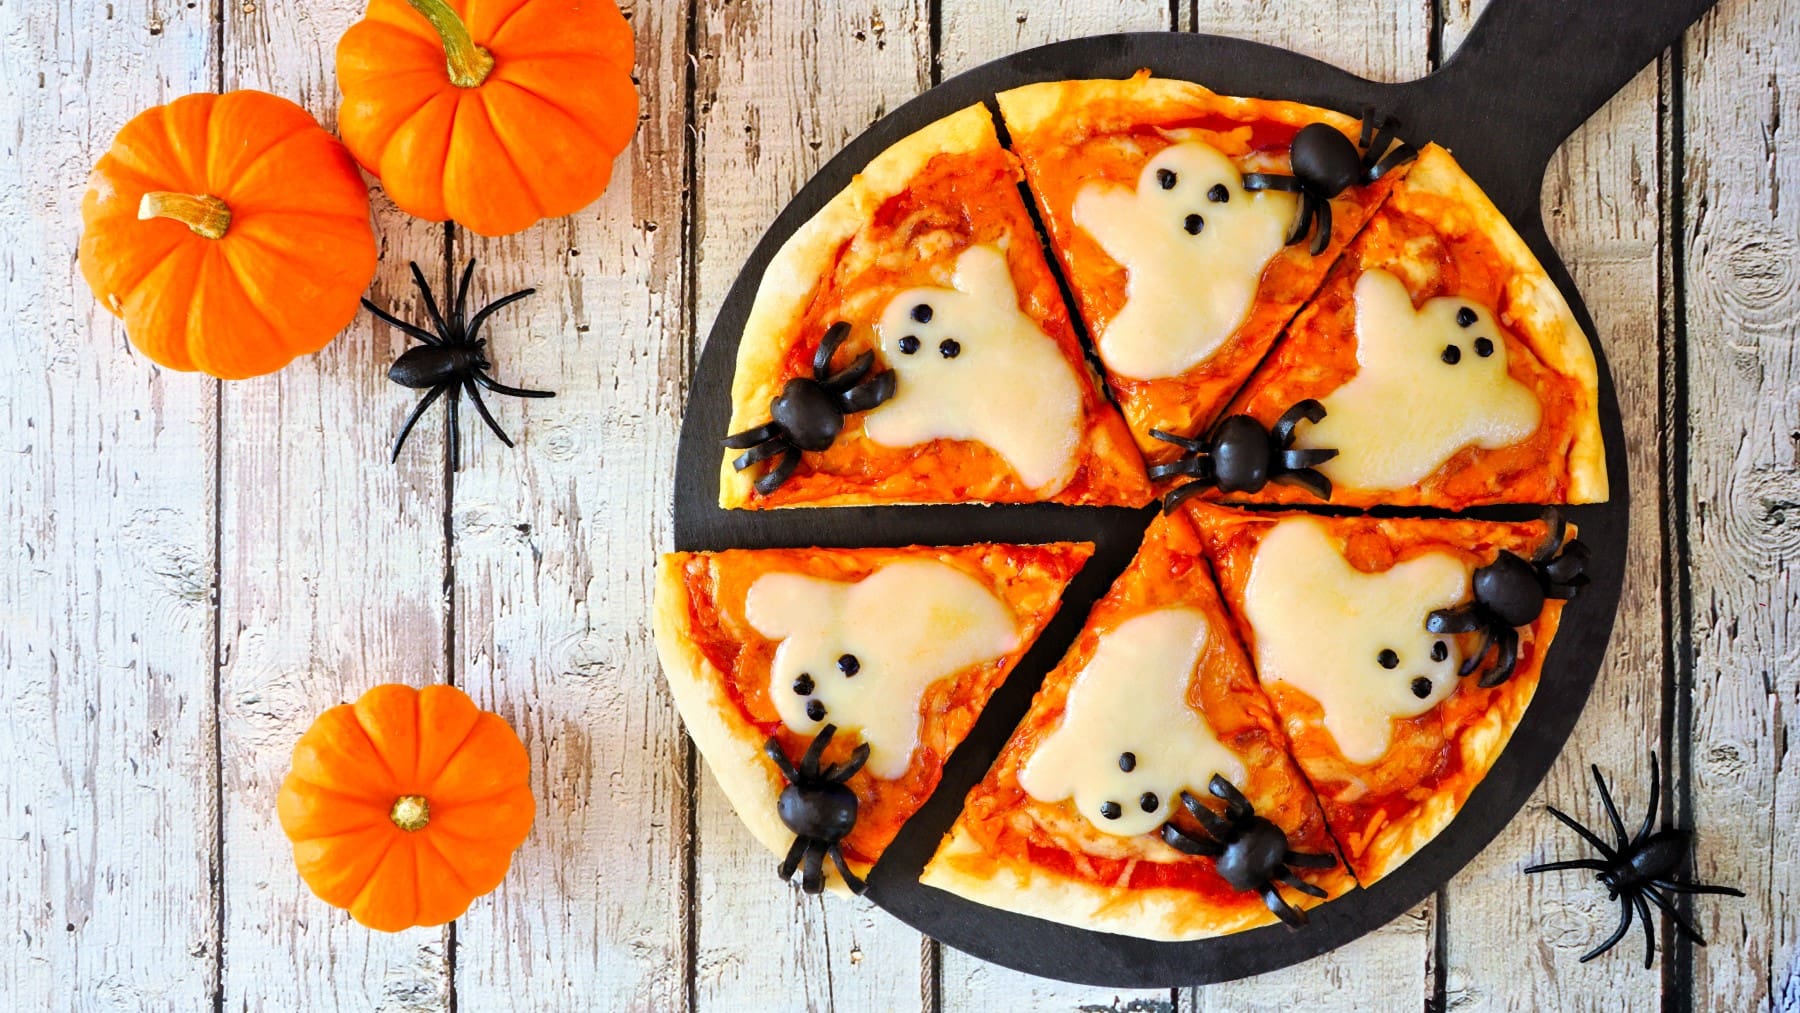 Halloween-Pizza mit Käse in geisterform und Oliven-Spinnen vor Holzhintergrund neben Halloween Deko.